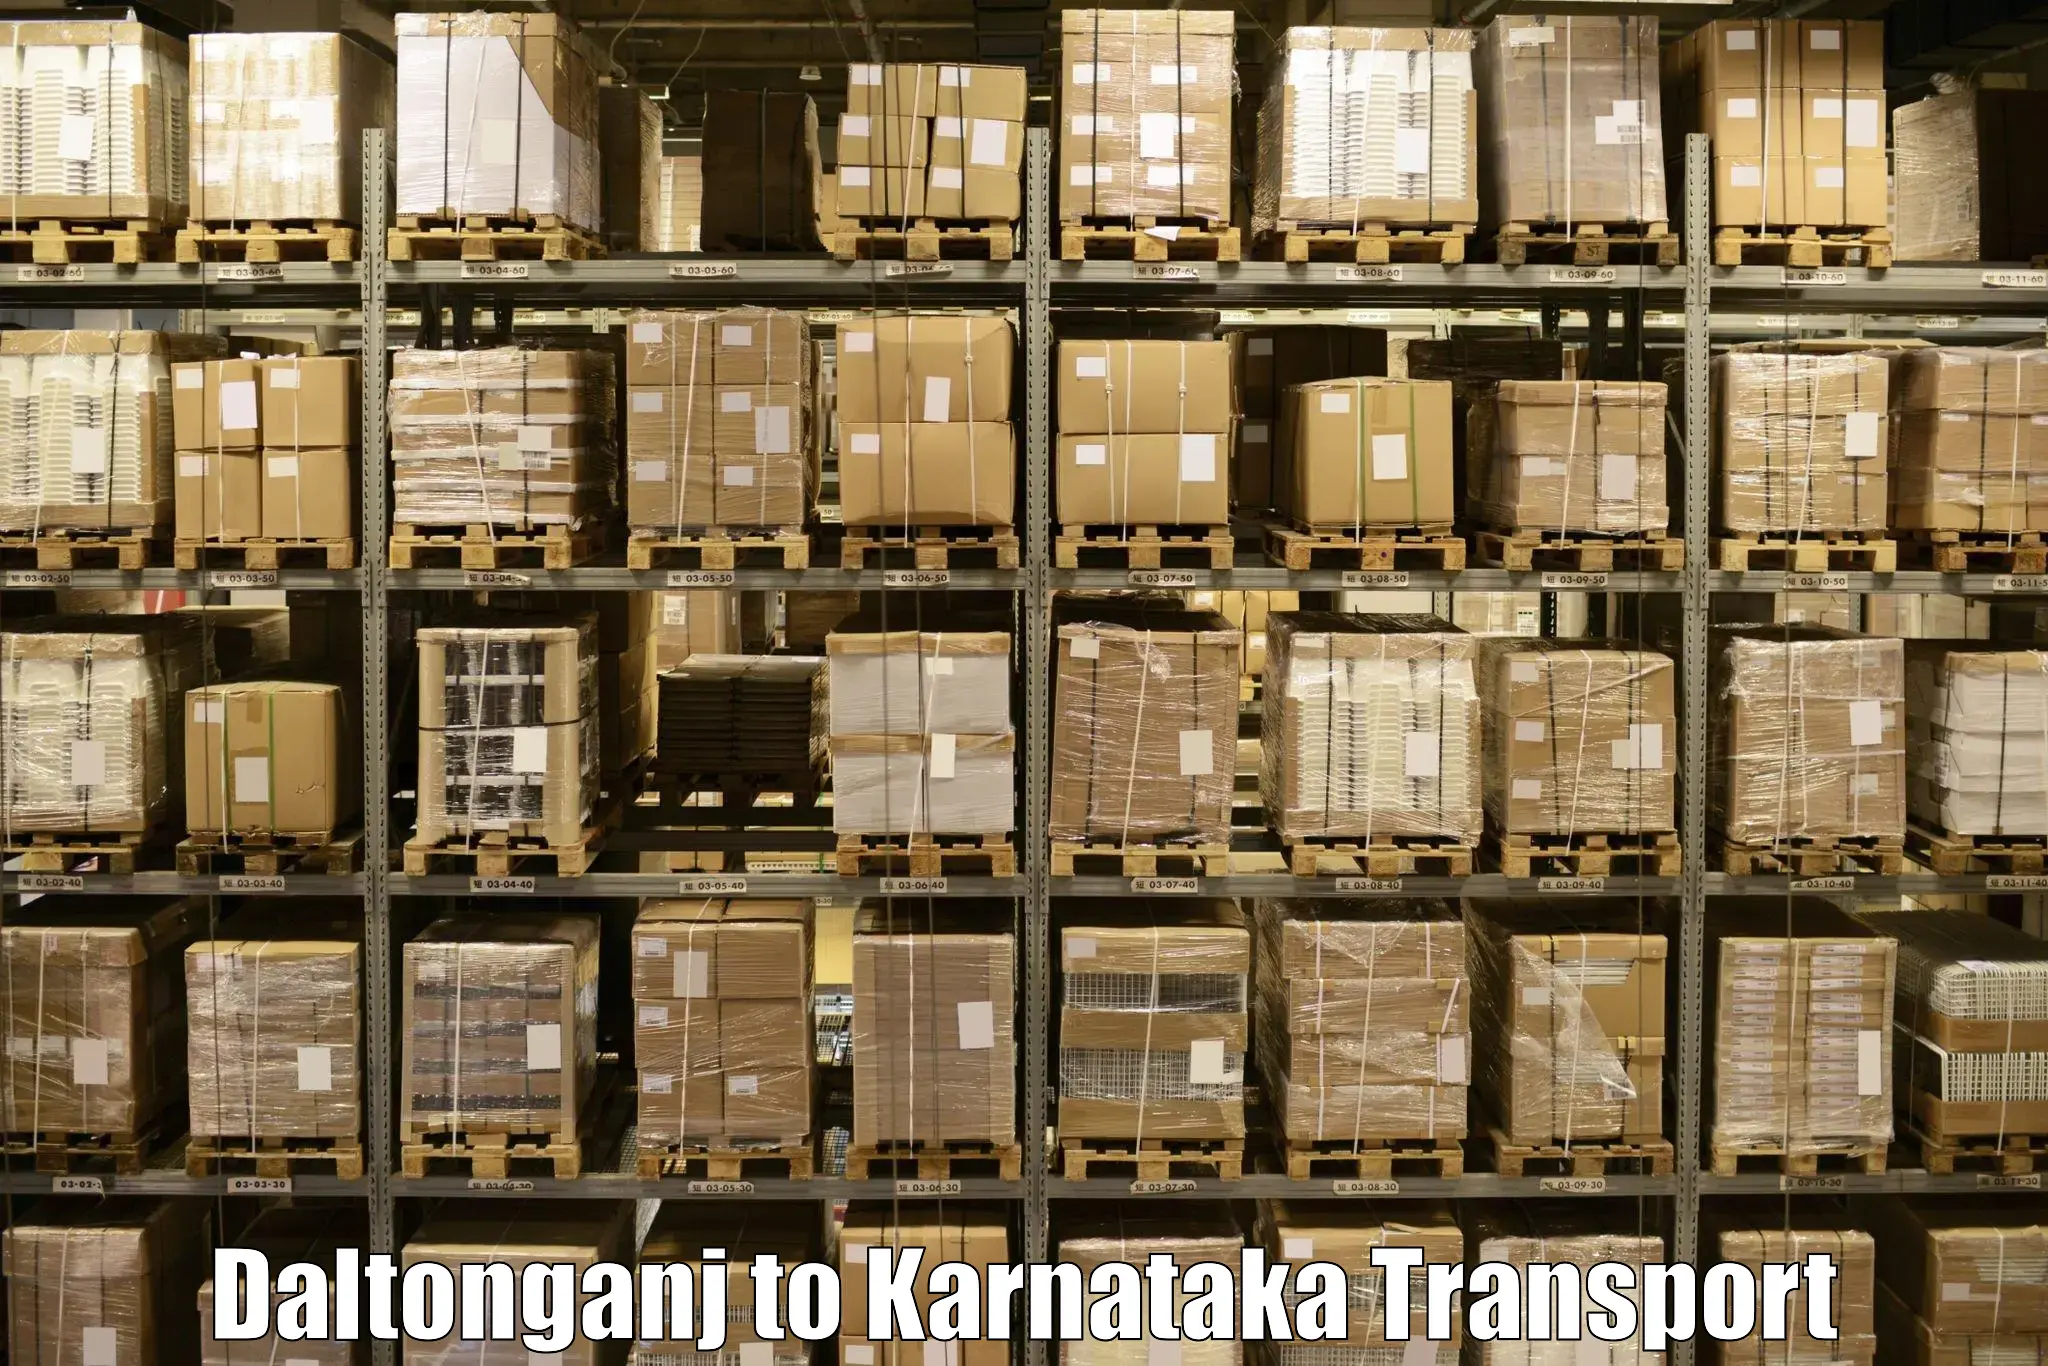 International cargo transportation services Daltonganj to Dharmasthala